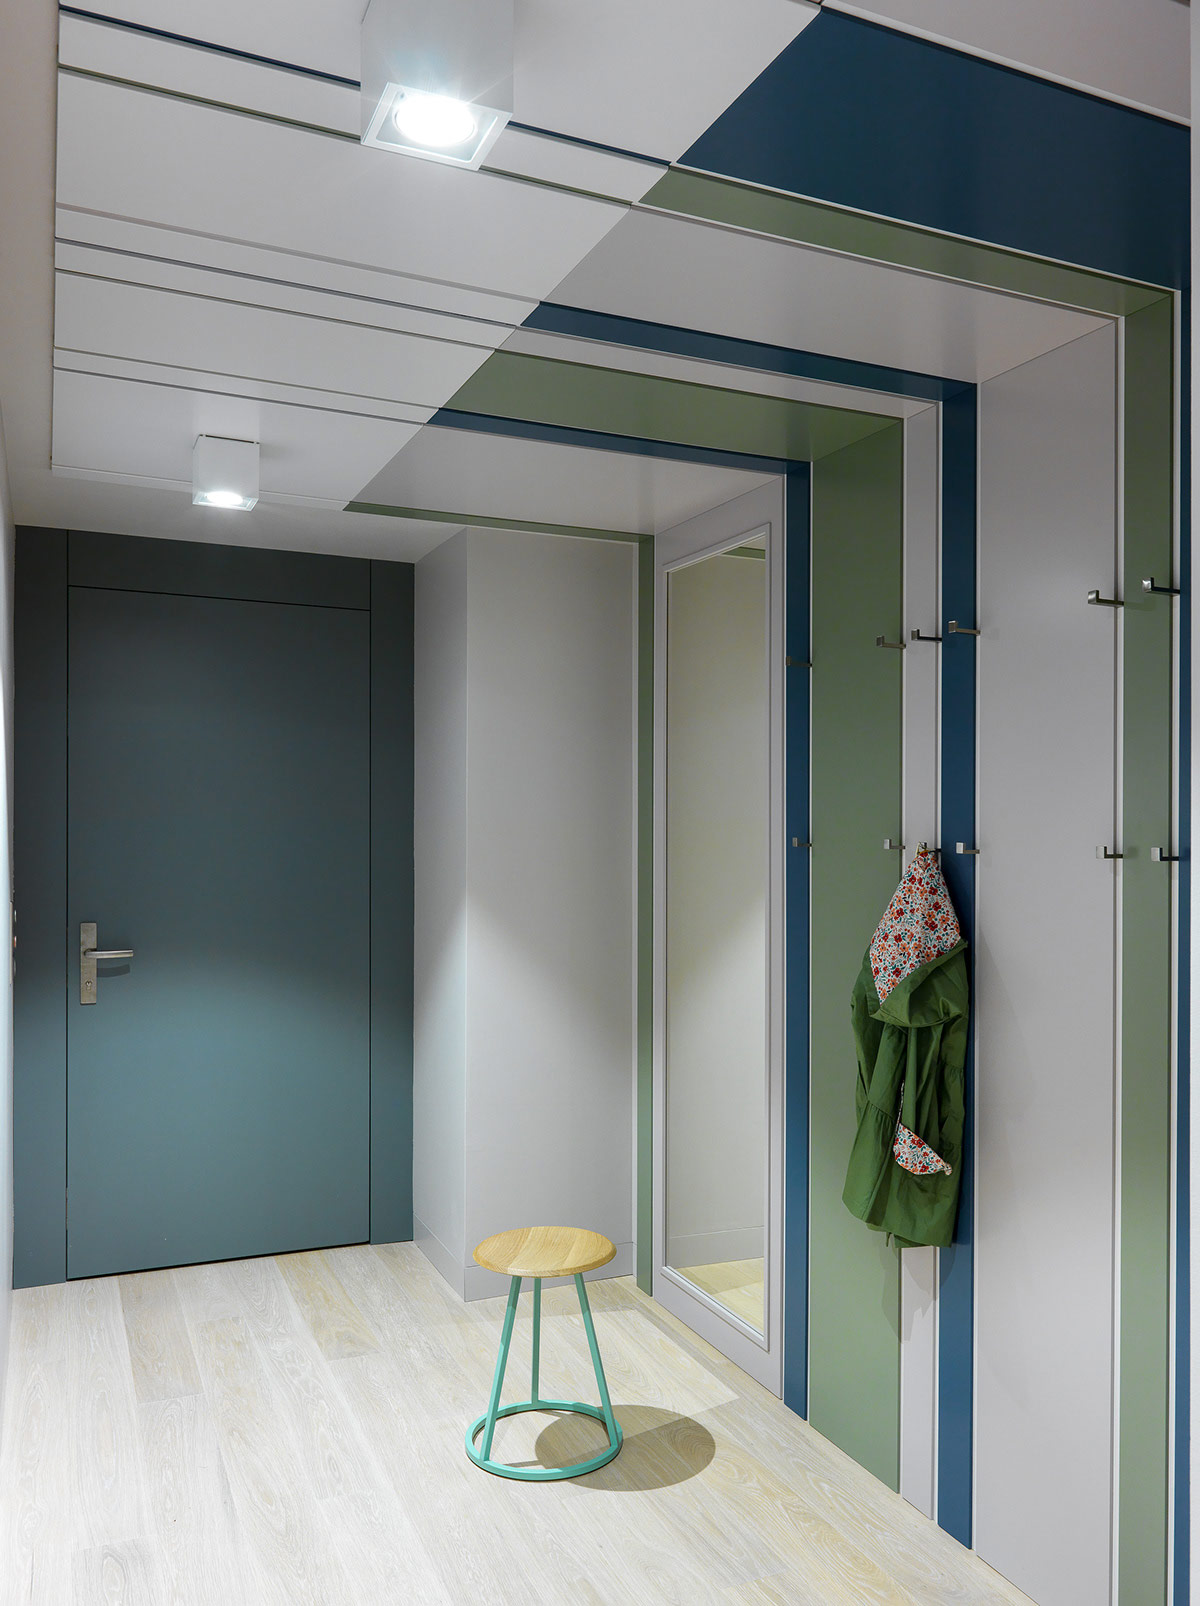 Thiết kế hành lang kết hợp màu xanh dương và xanh lá cây